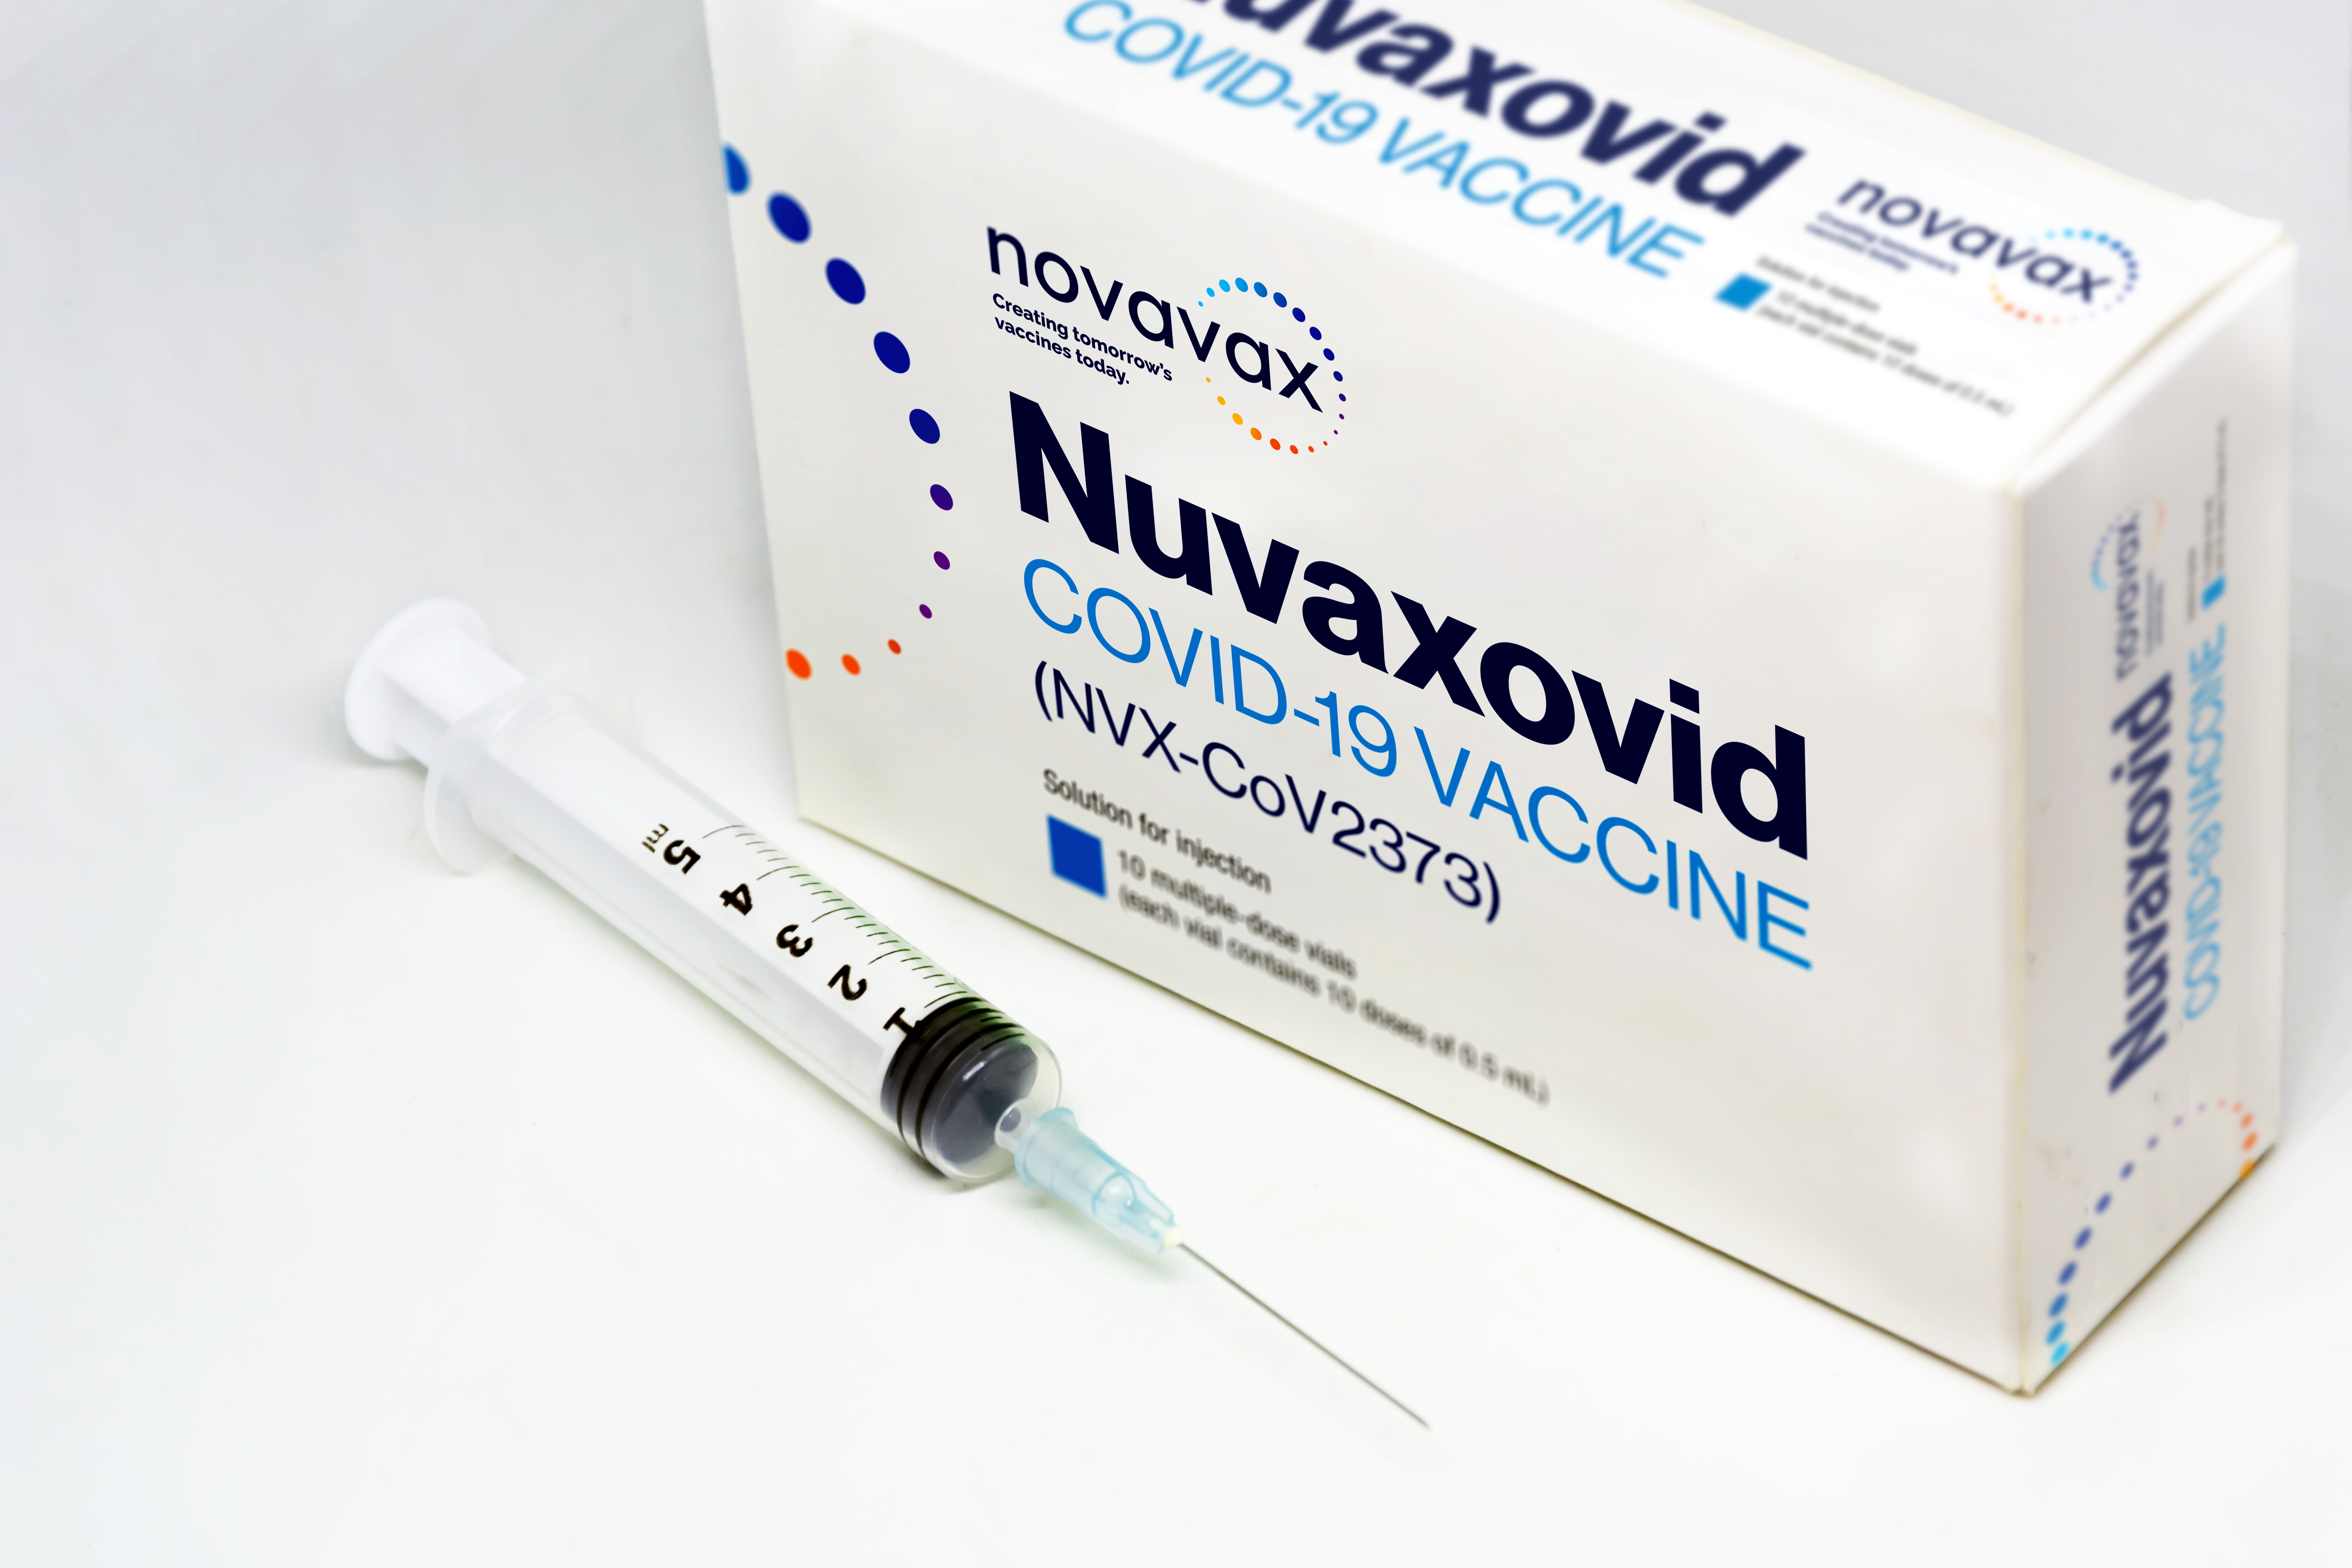     Vaccin Novavax : ouverture des prises de rendez-vous pour les volontaires

